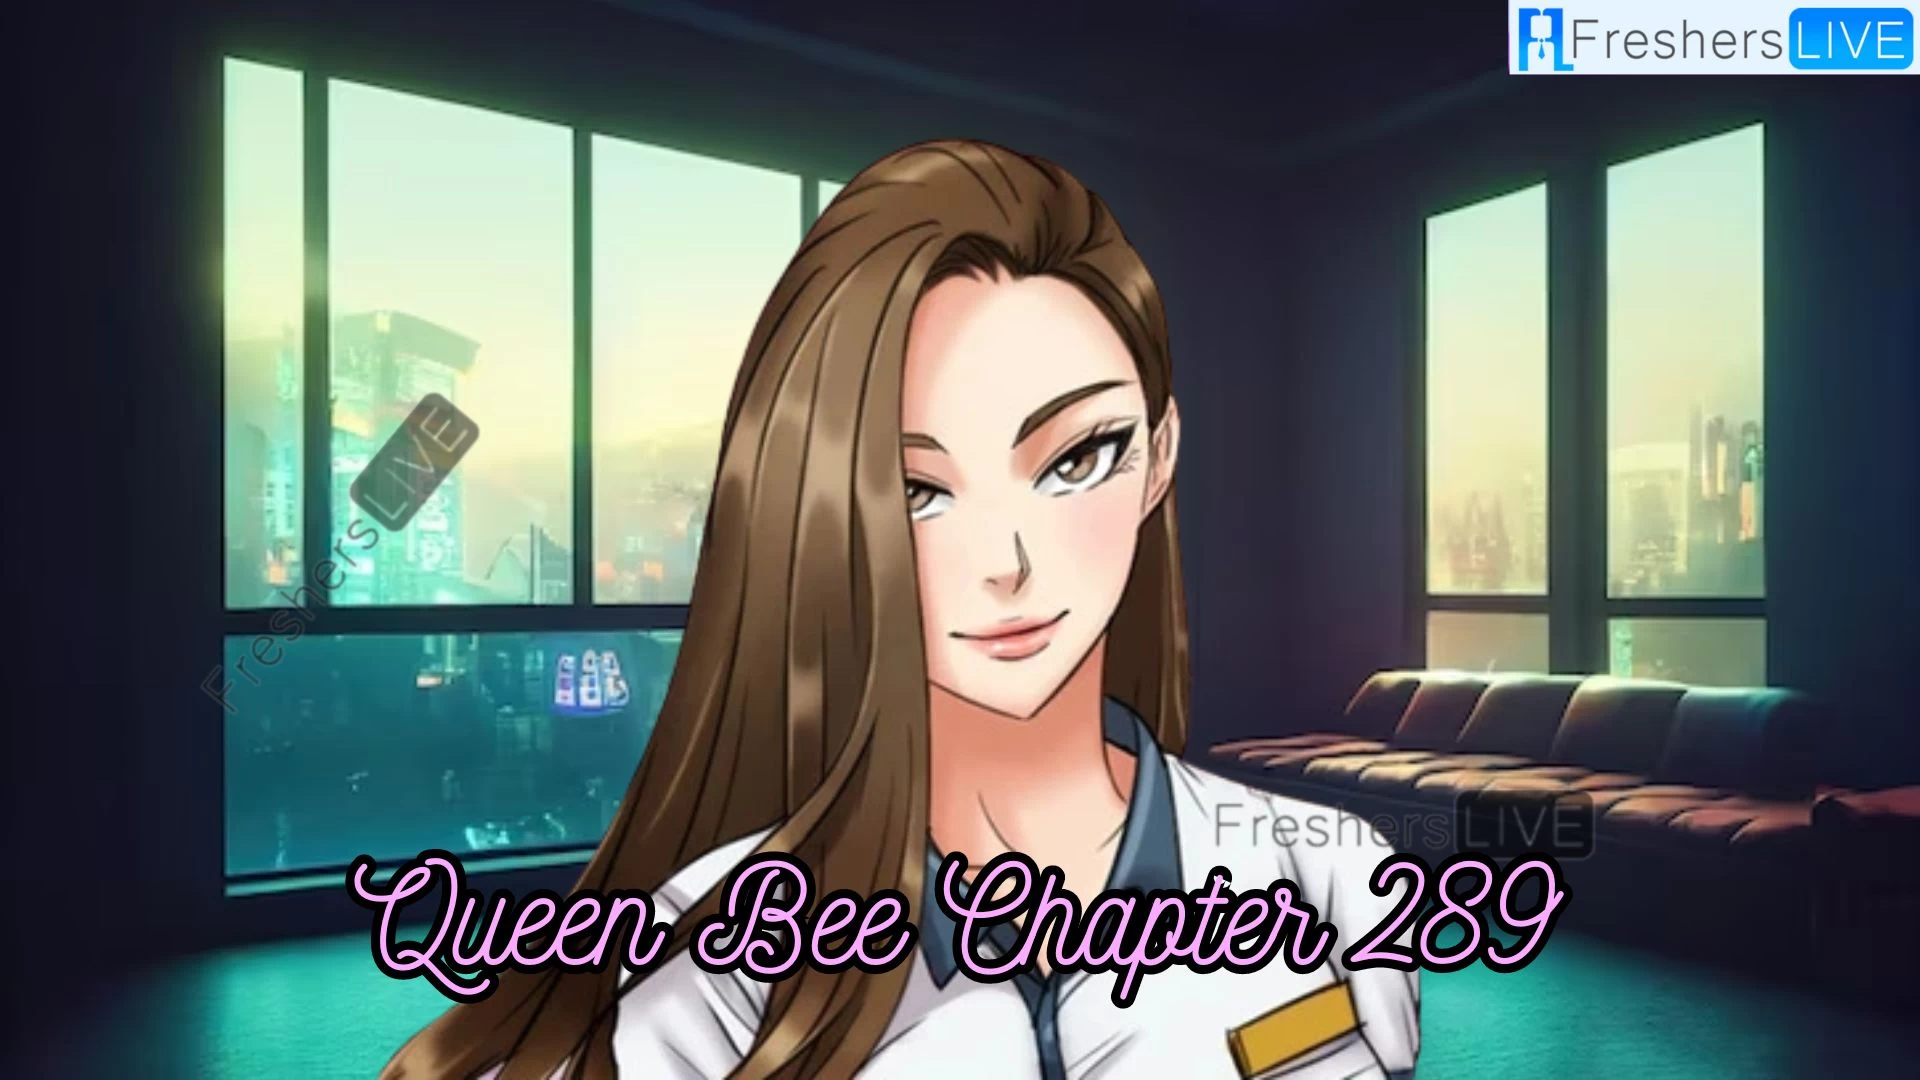 Queen Bee Chapter 289 Spoiler, Release Date, Recap, Raw Scan, and More